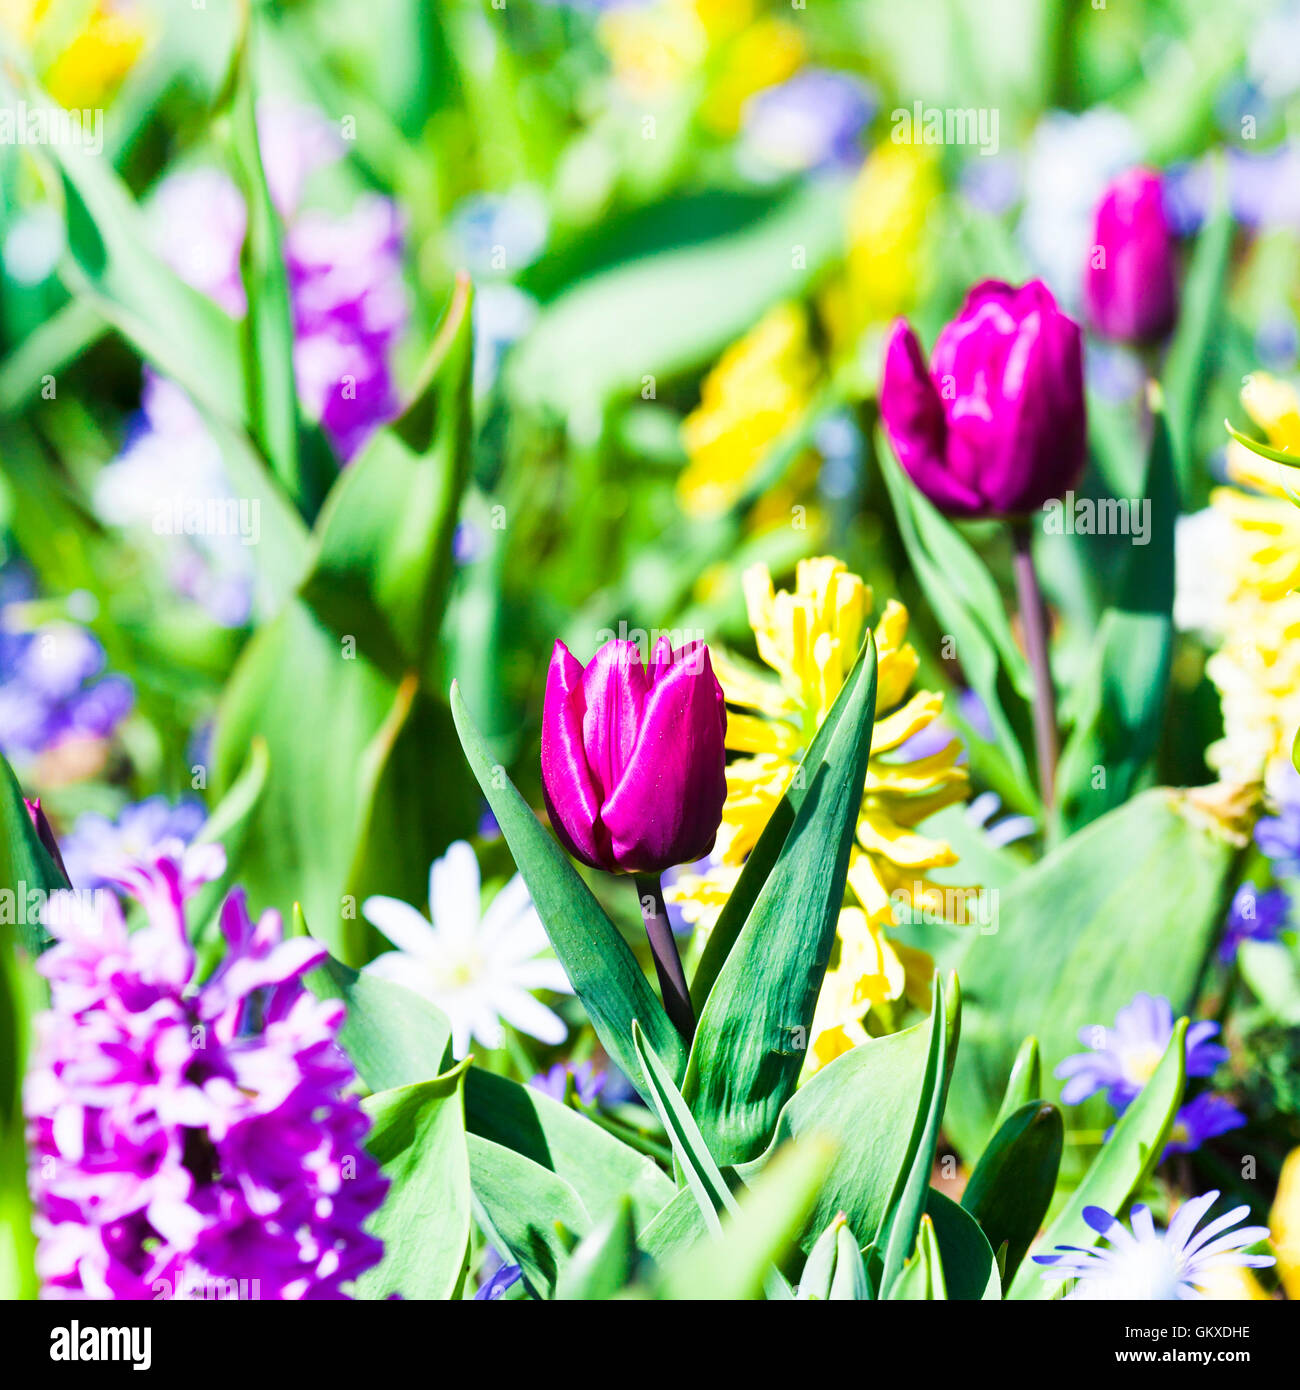 Fioritura di tulipani colorati nel famoso parco fgloral Keukenhof in Olanda Foto Stock